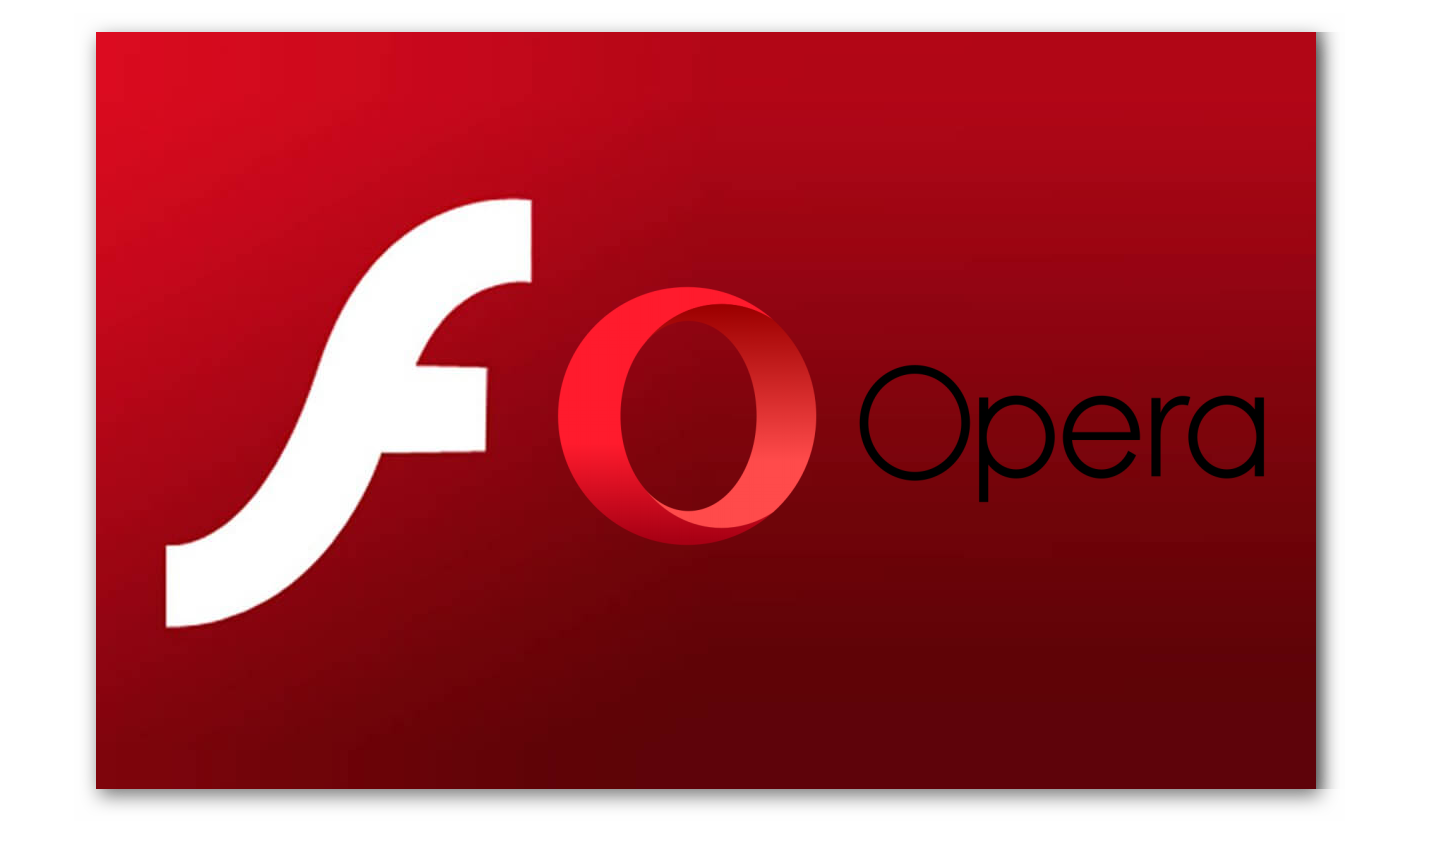 Izobrazhenie Adobe Flash Player i Opera